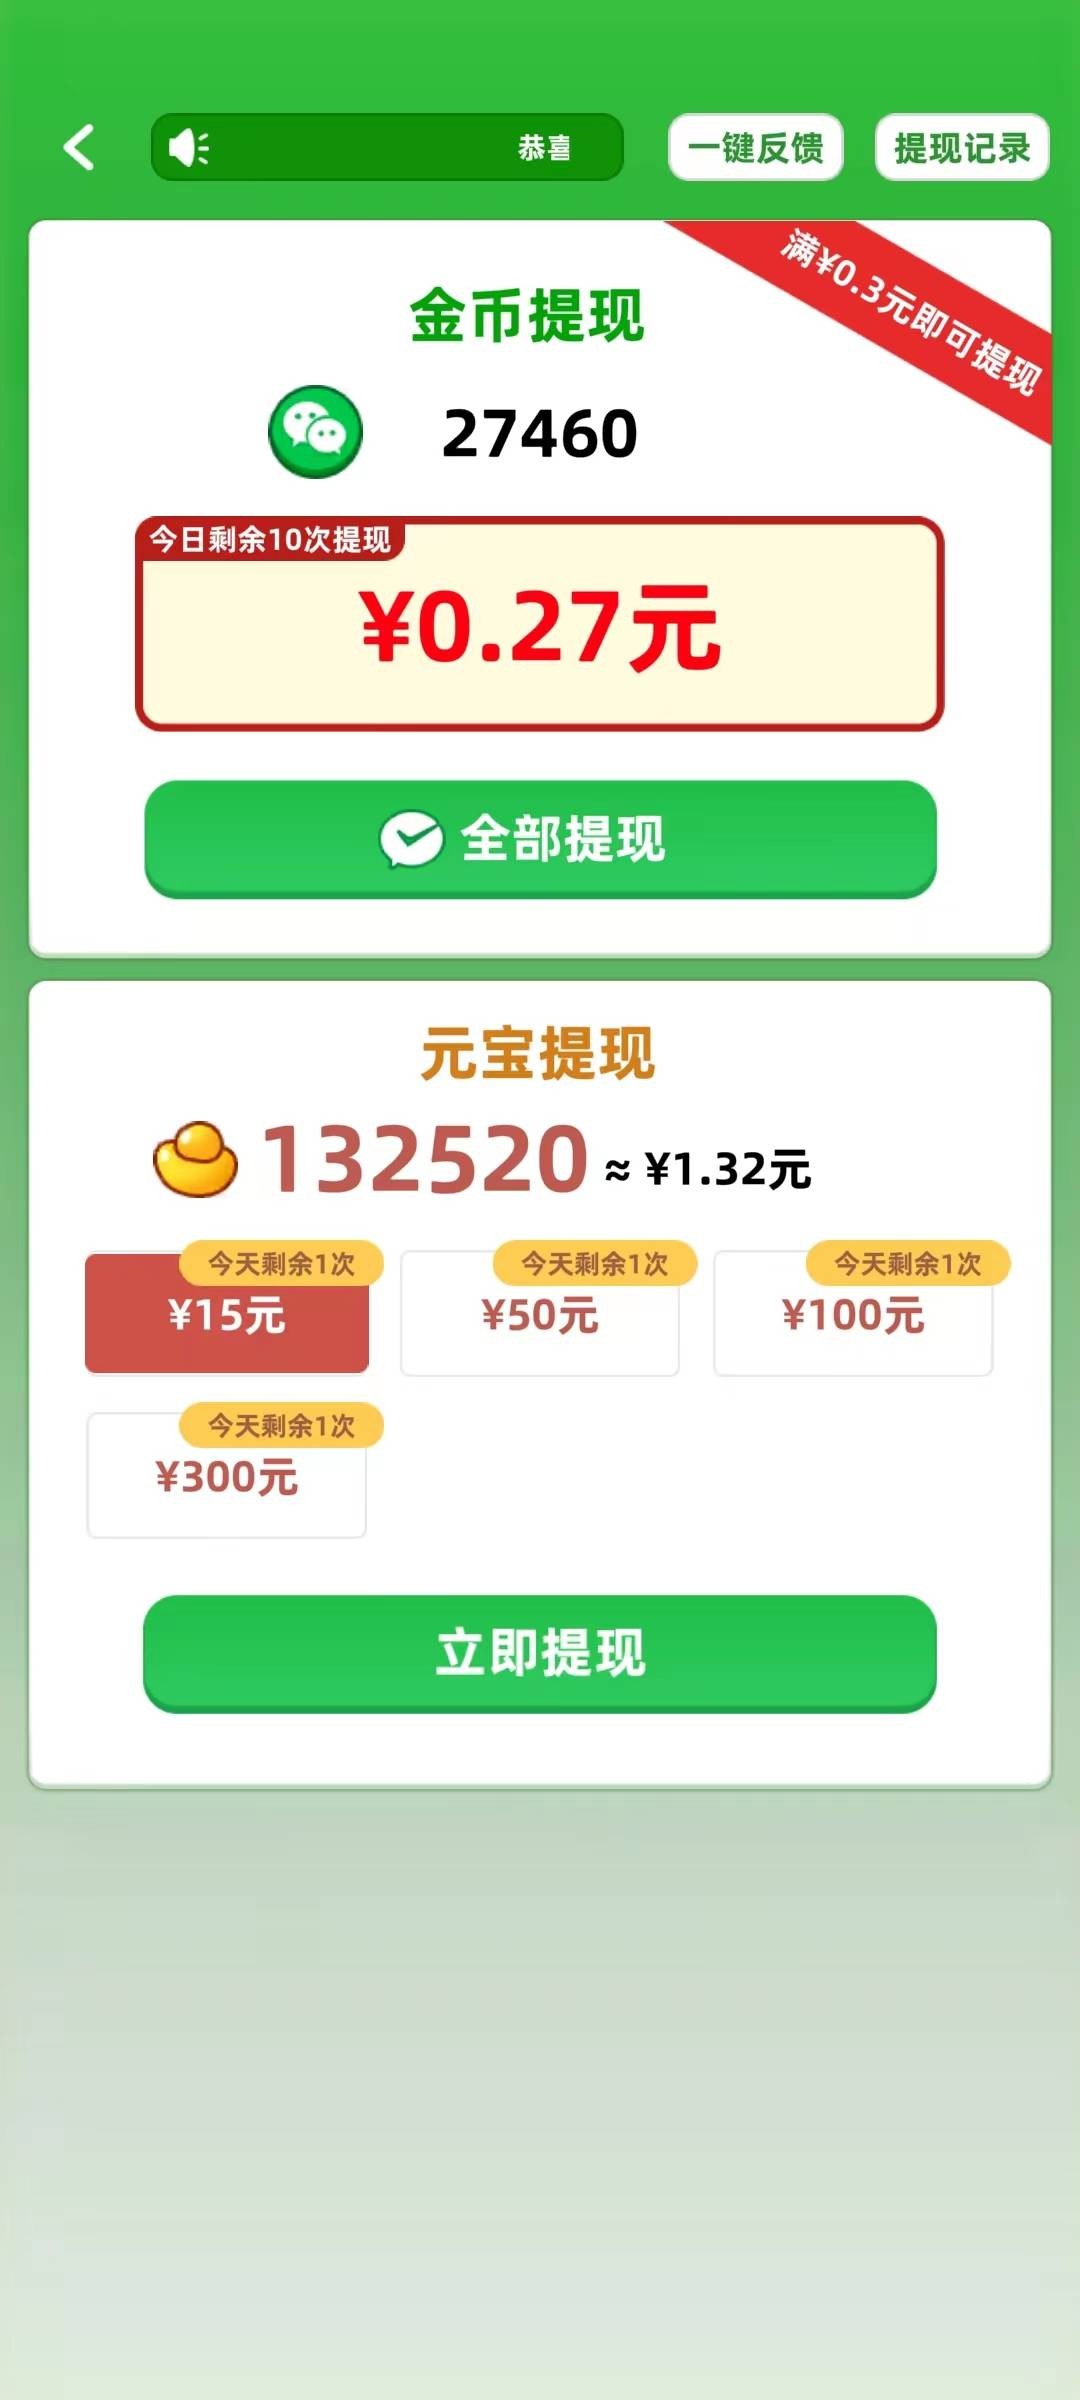 填字解谜王2游戏手游app下载2